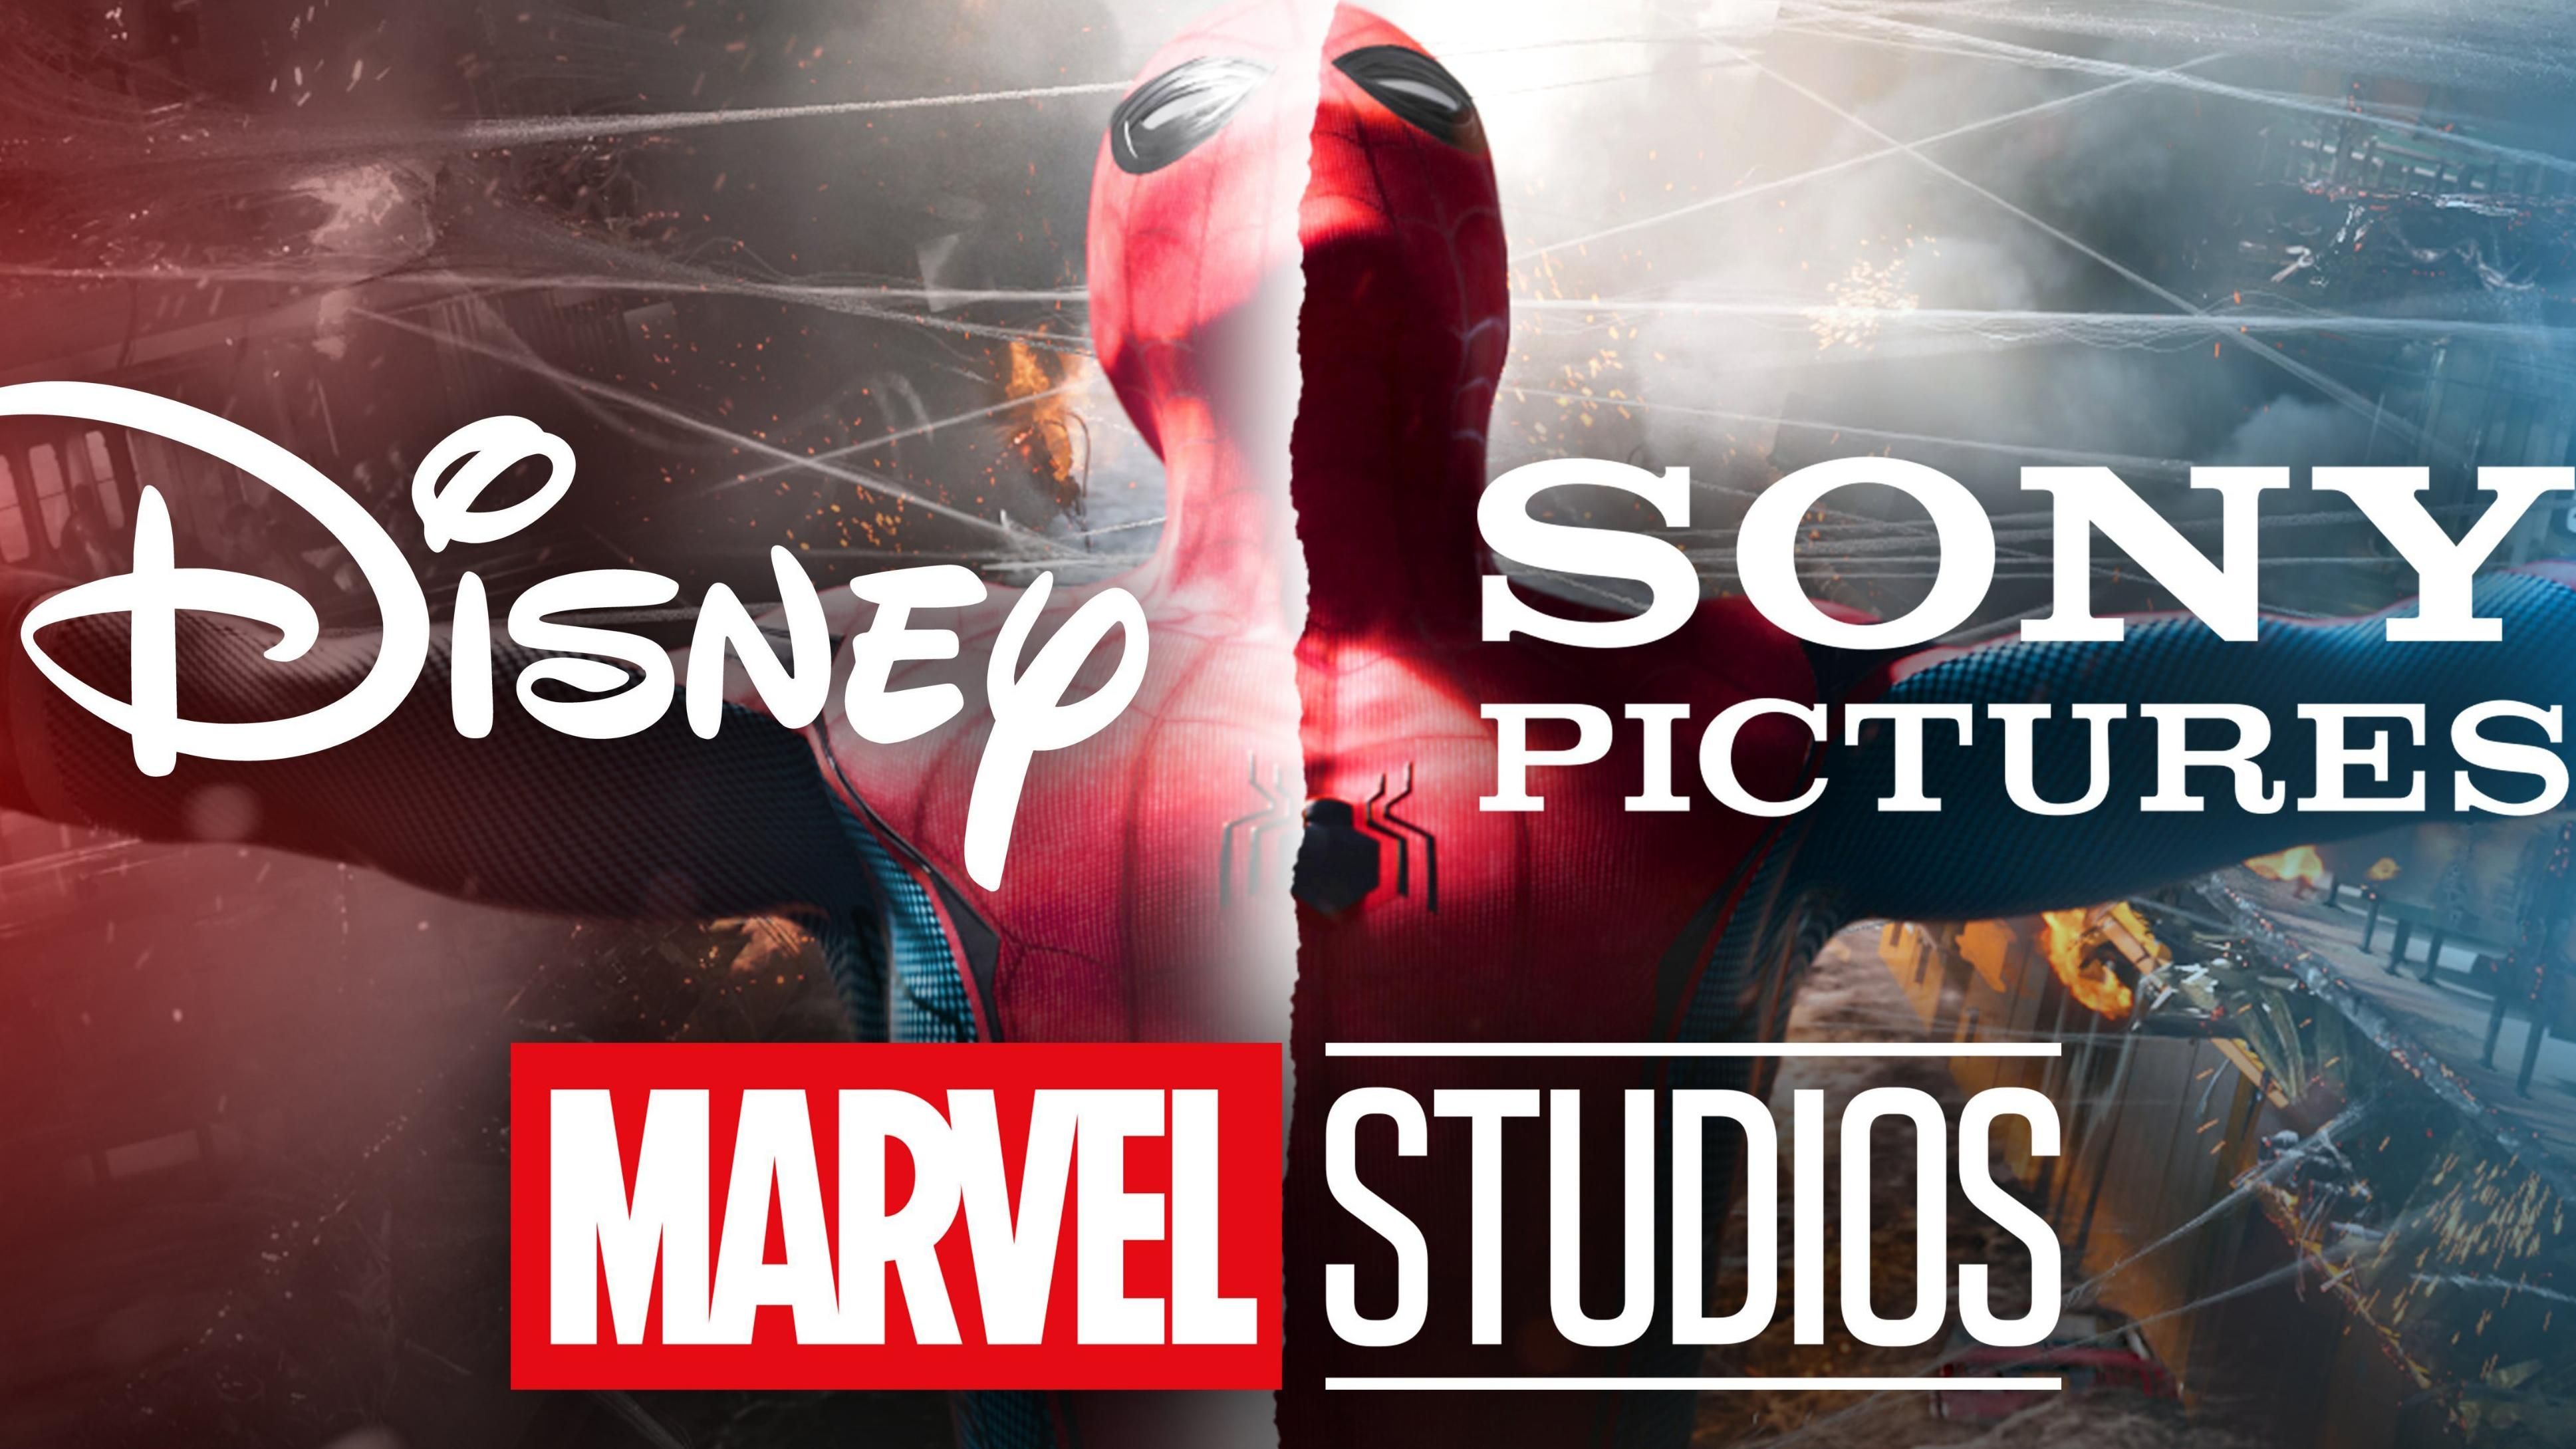 Фильму "Человек-паук" быть: Sony и Disney договорились оставить картину во вселенной Marvel